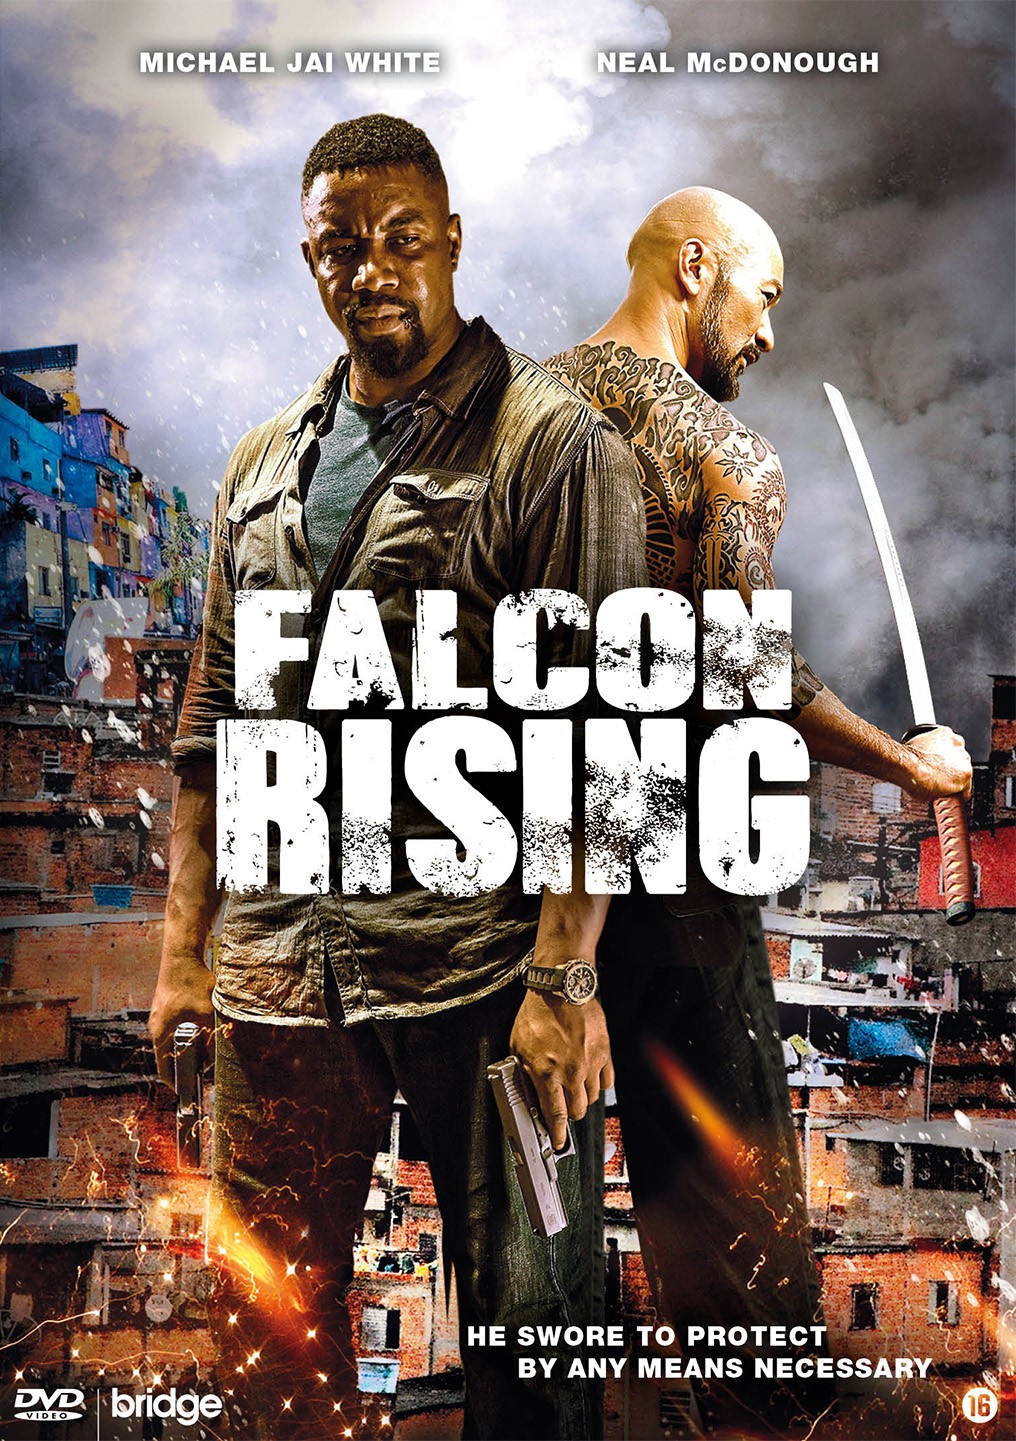 ดูหนังออนไลน์ Falcon Rising (2014) ฟัลคอน ไรซิ่ง ผงาดล่าแค้น